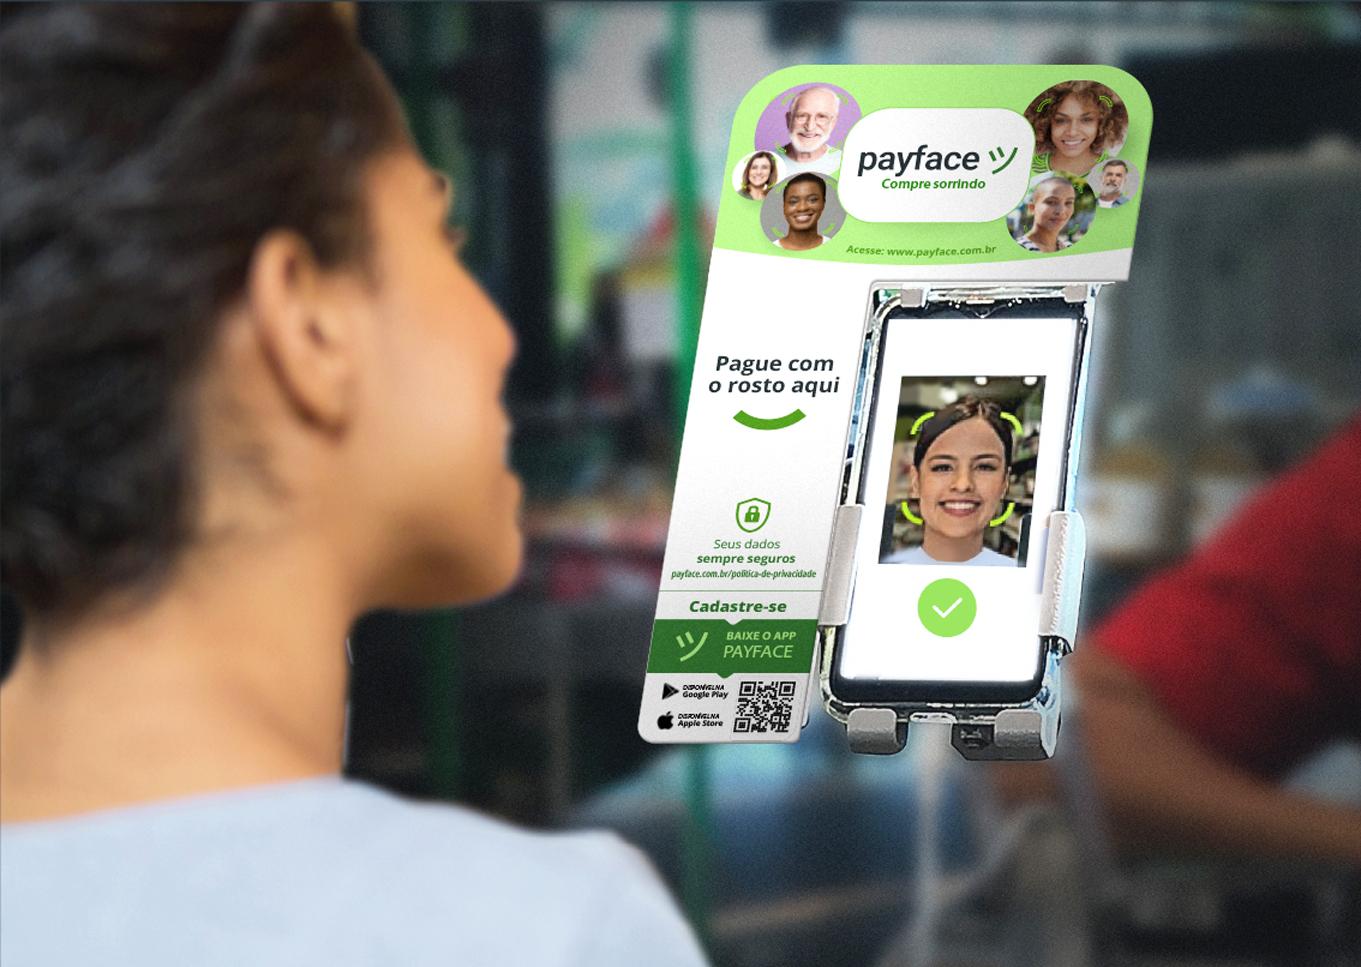 Rede de supermercados adota pagamento com biometria facial